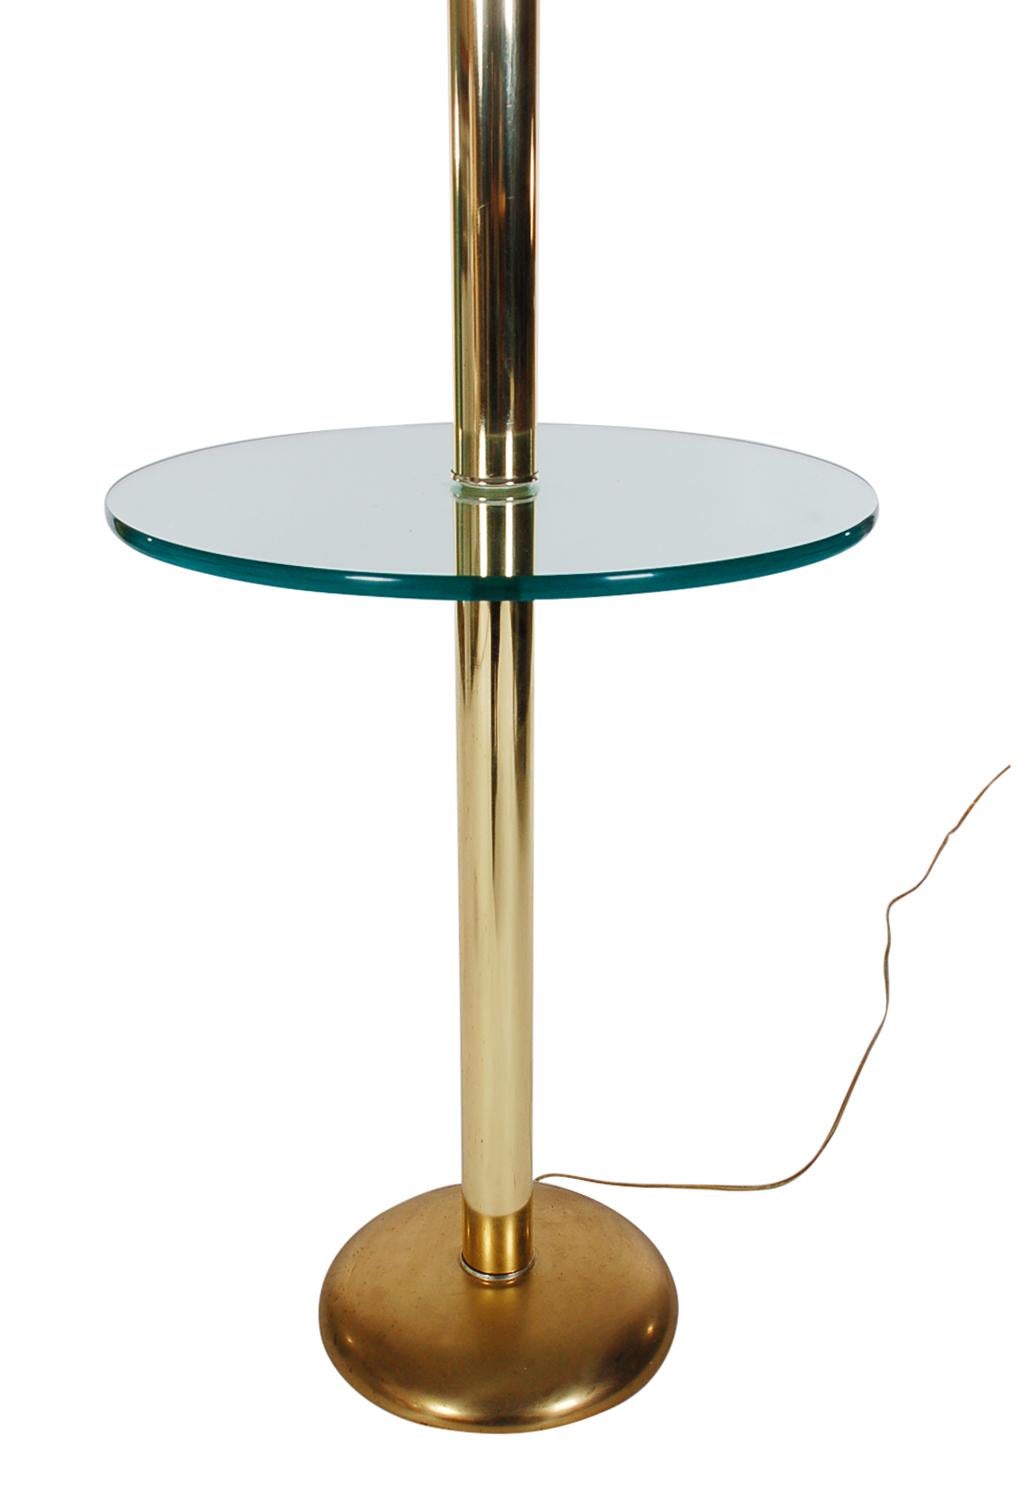 Eine hochwertige Stehlampe mit rundem Glastisch aus Italien, um 1982. Die Leuchte verfügt über eine vermessingte Stahlkonstruktion, einen runden Tischeinsatz aus Klarglas und dicke Lucite-Ringe. Getestet und funktionsfähig.